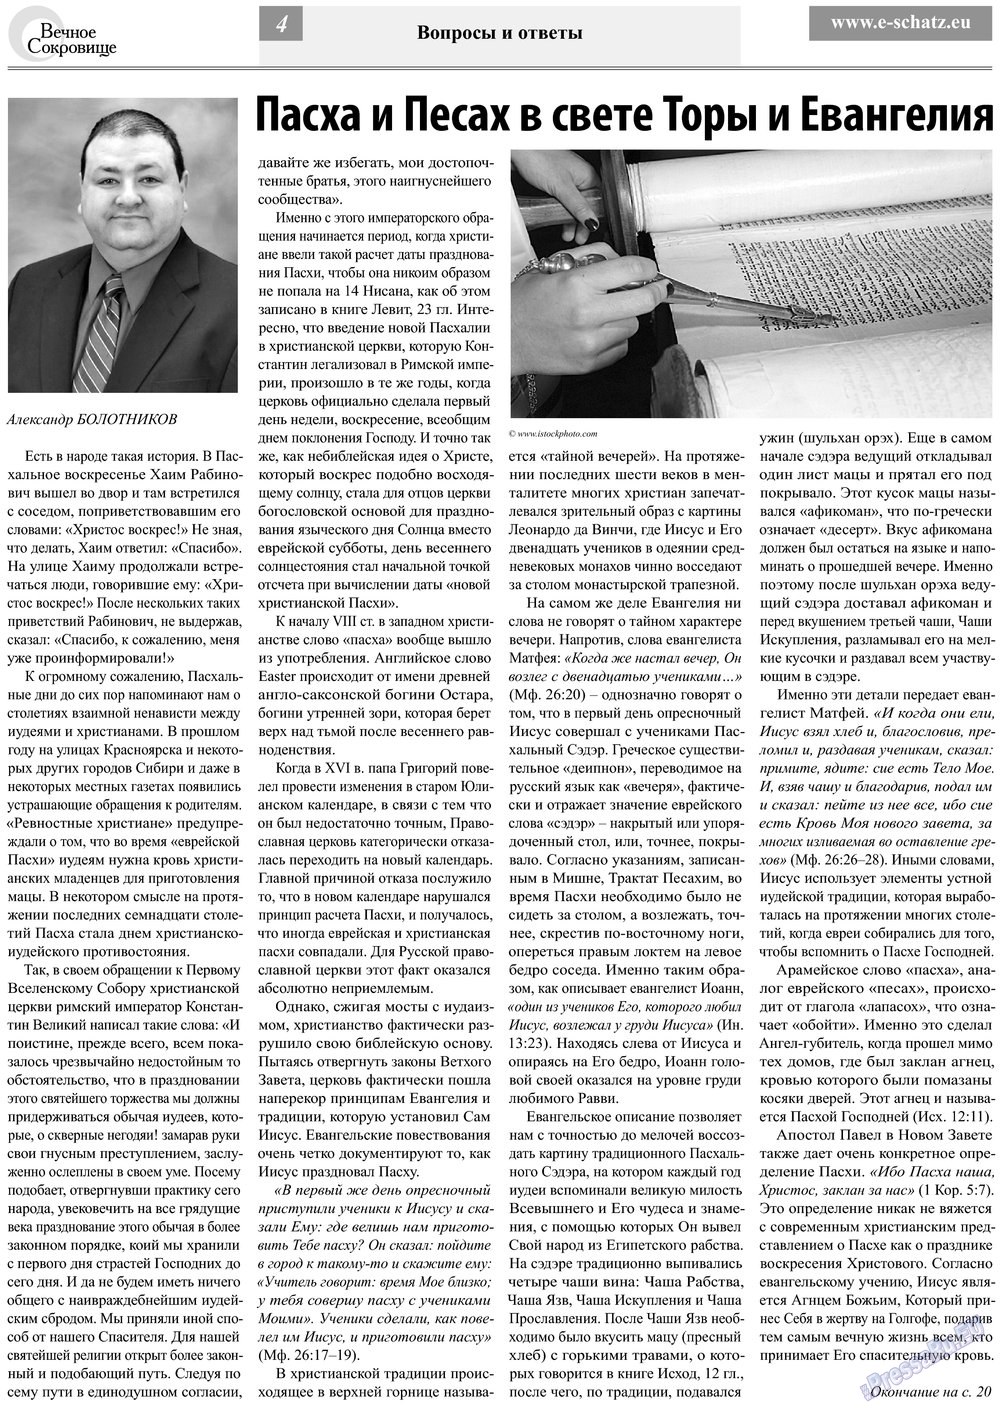 Вечное сокровище, газета. 2013 №3 стр.4